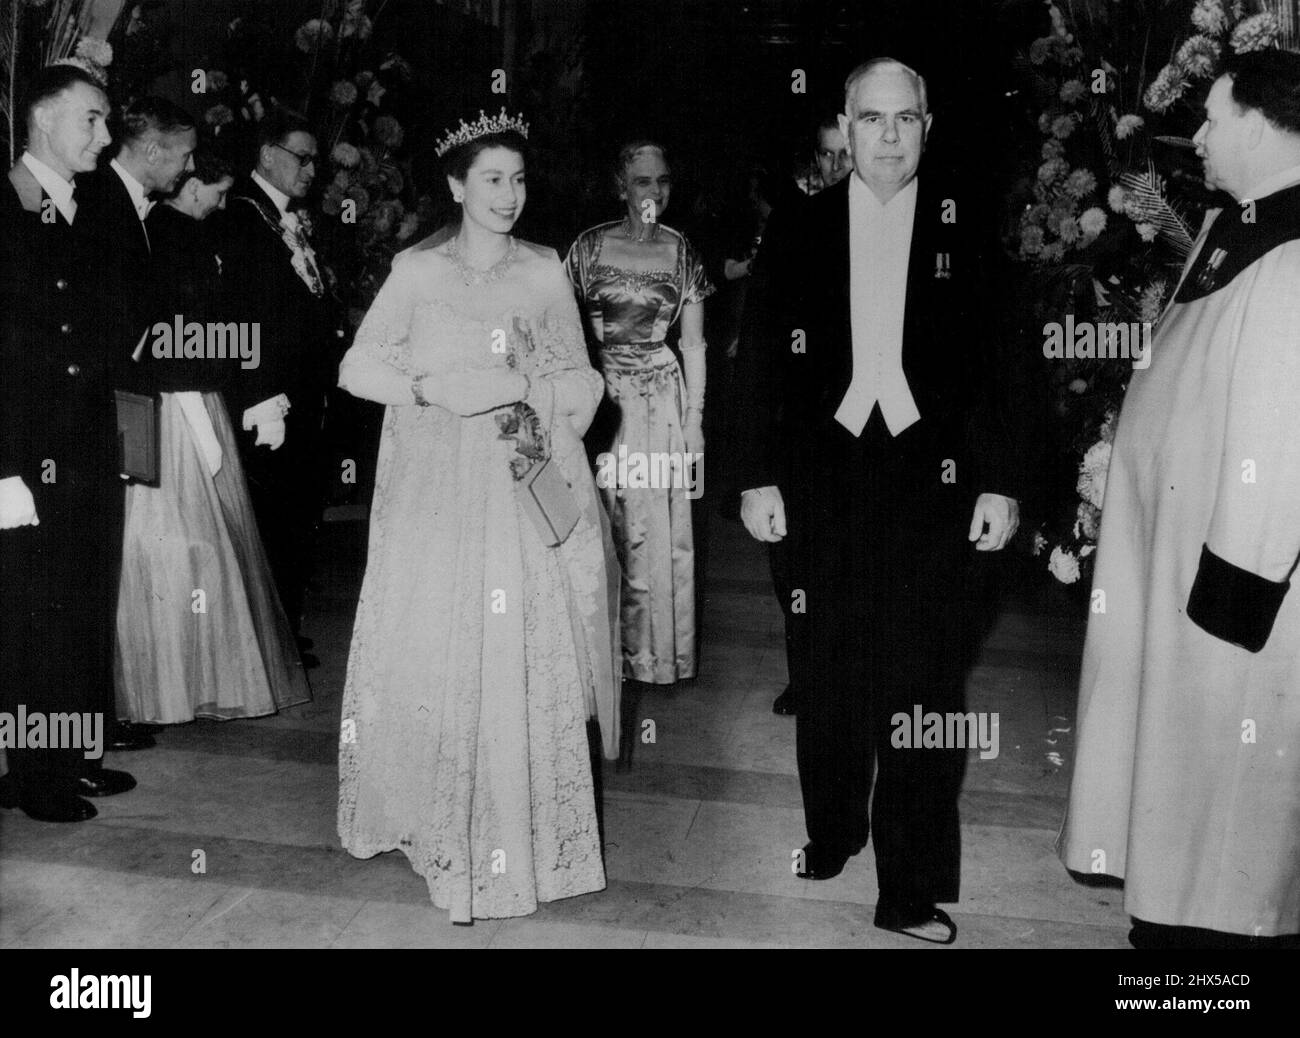 La Reine au Lloyd's - la Reine, portant une robe de dentelle ivoire sur taffetas de couleur pêche, est vue quand elle a visité Lloyd's pour poser la pierre de fondation d'un nouveau bâtiment du Lloyd's, £2, 000 000. À son arrivée, la Reine, qui était accompagnée du duc d'Édimbourg, a été accueillie par M. Matthew Watt Drysdale, président de Lioyd. 7 novembre 1952. Banque D'Images